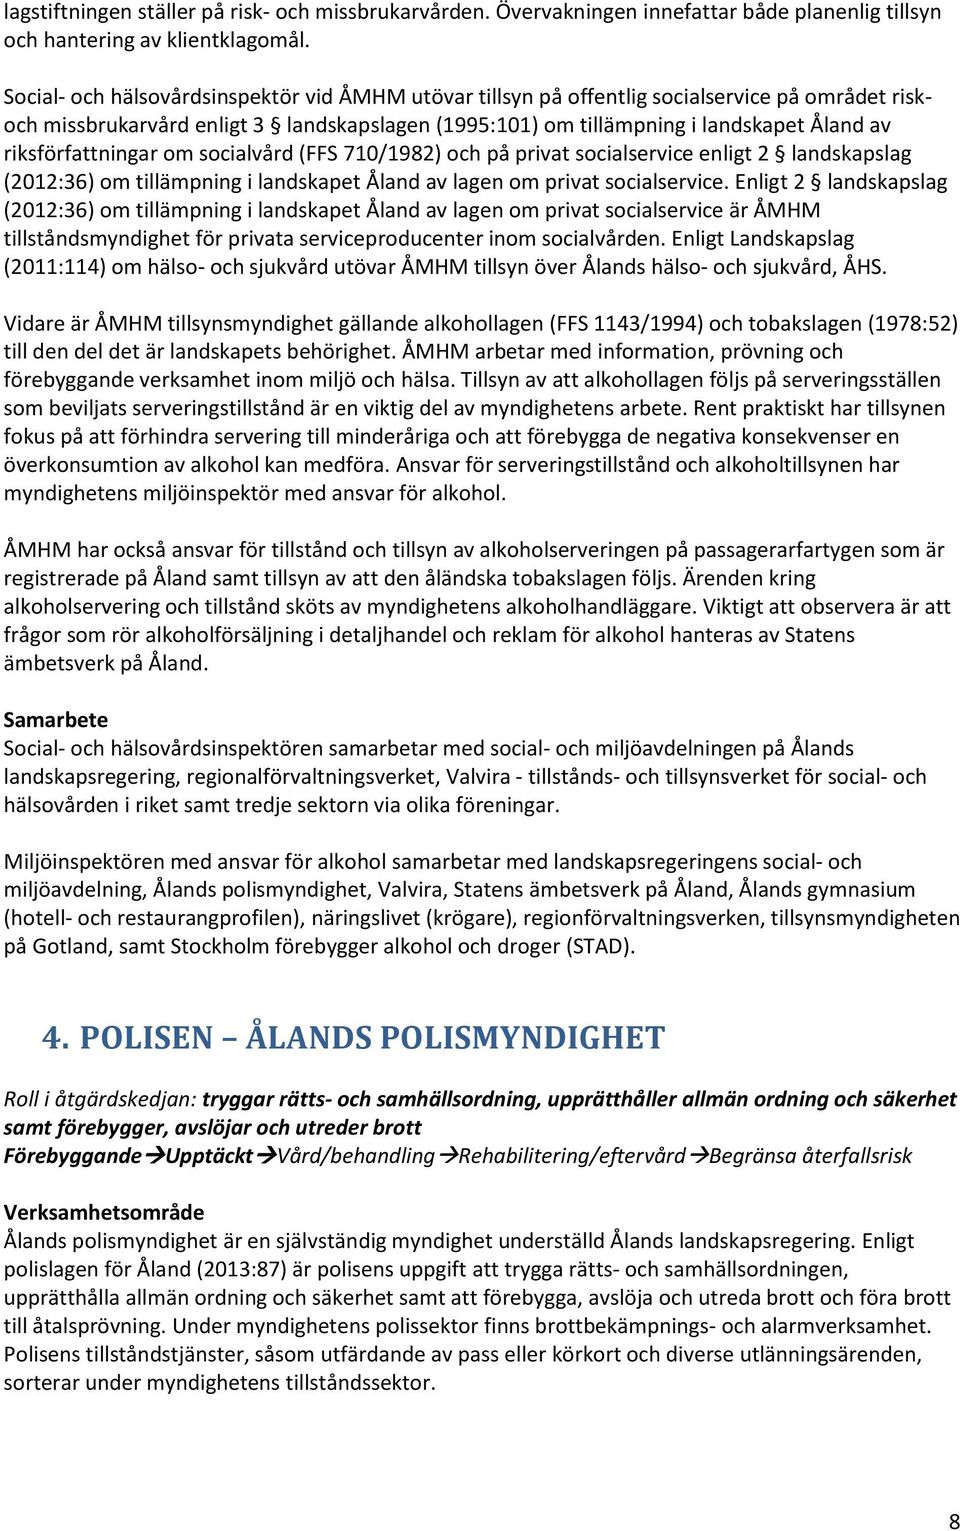 riksförfattningar om socialvård (FFS 710/1982) och på privat socialservice enligt 2 landskapslag (2012:36) om tillämpning i landskapet Åland av lagen om privat socialservice.